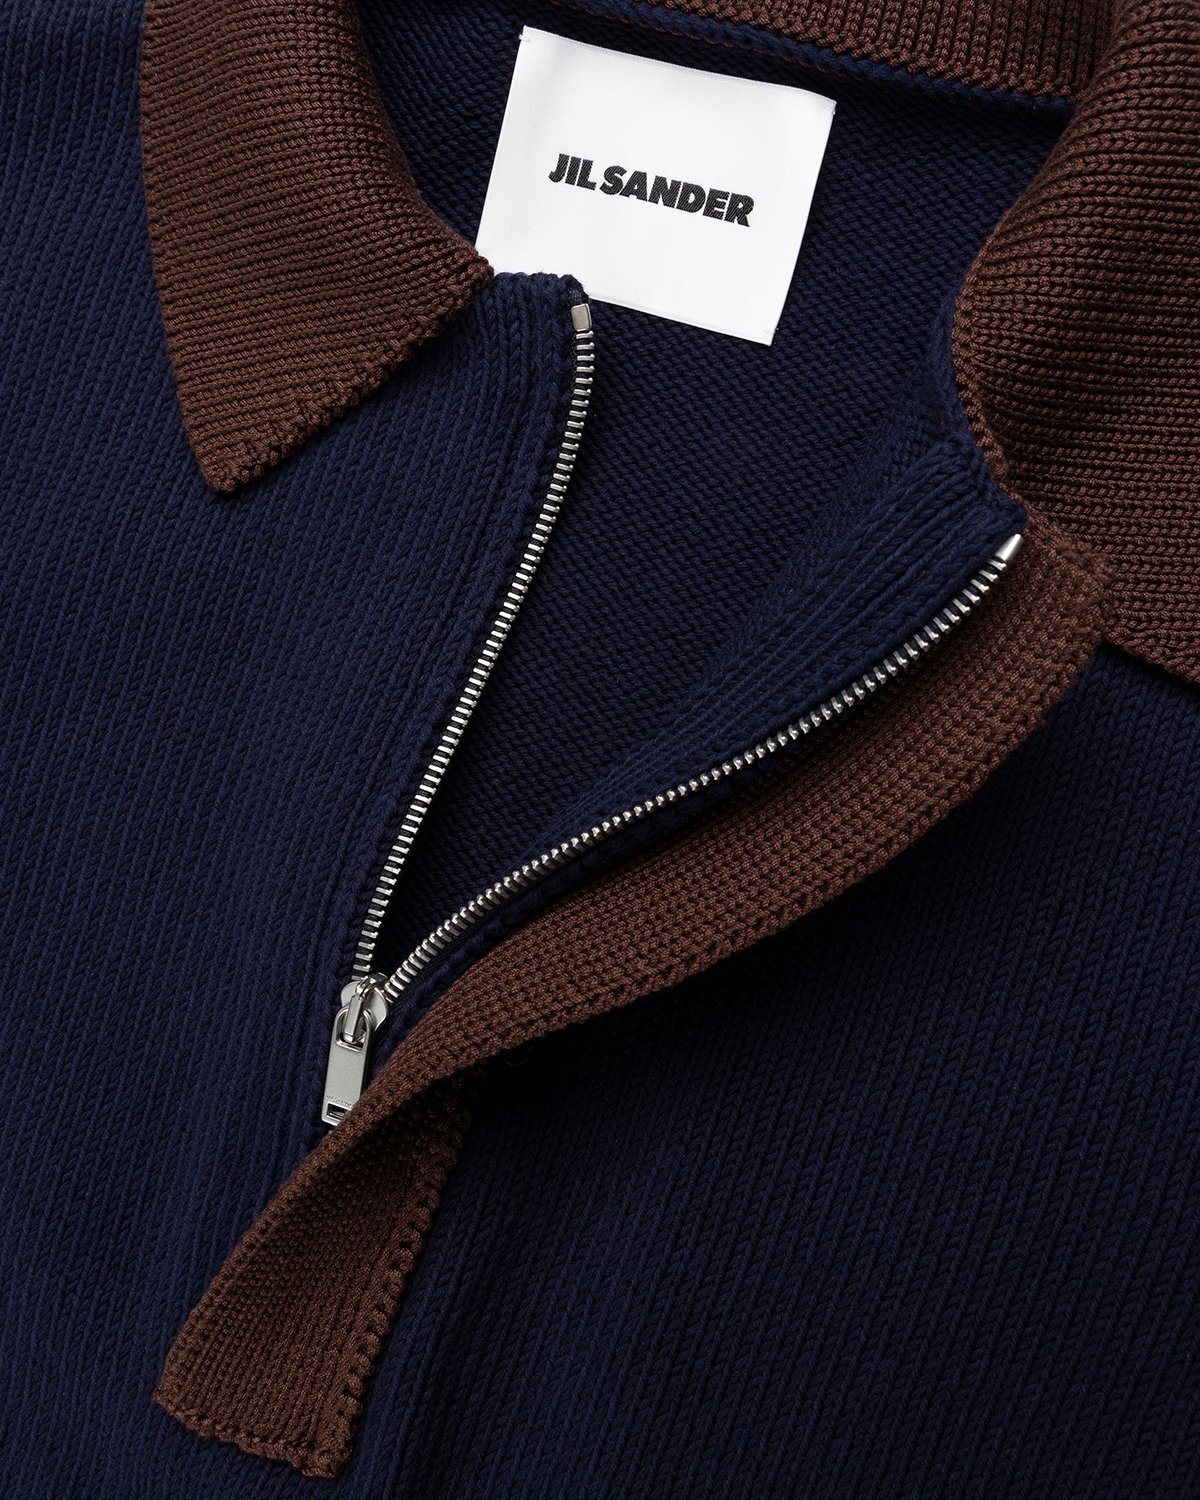 Jil Sander – Short Sleeve Knit Shirt Dark Blue - Polos - Blue - Image 5